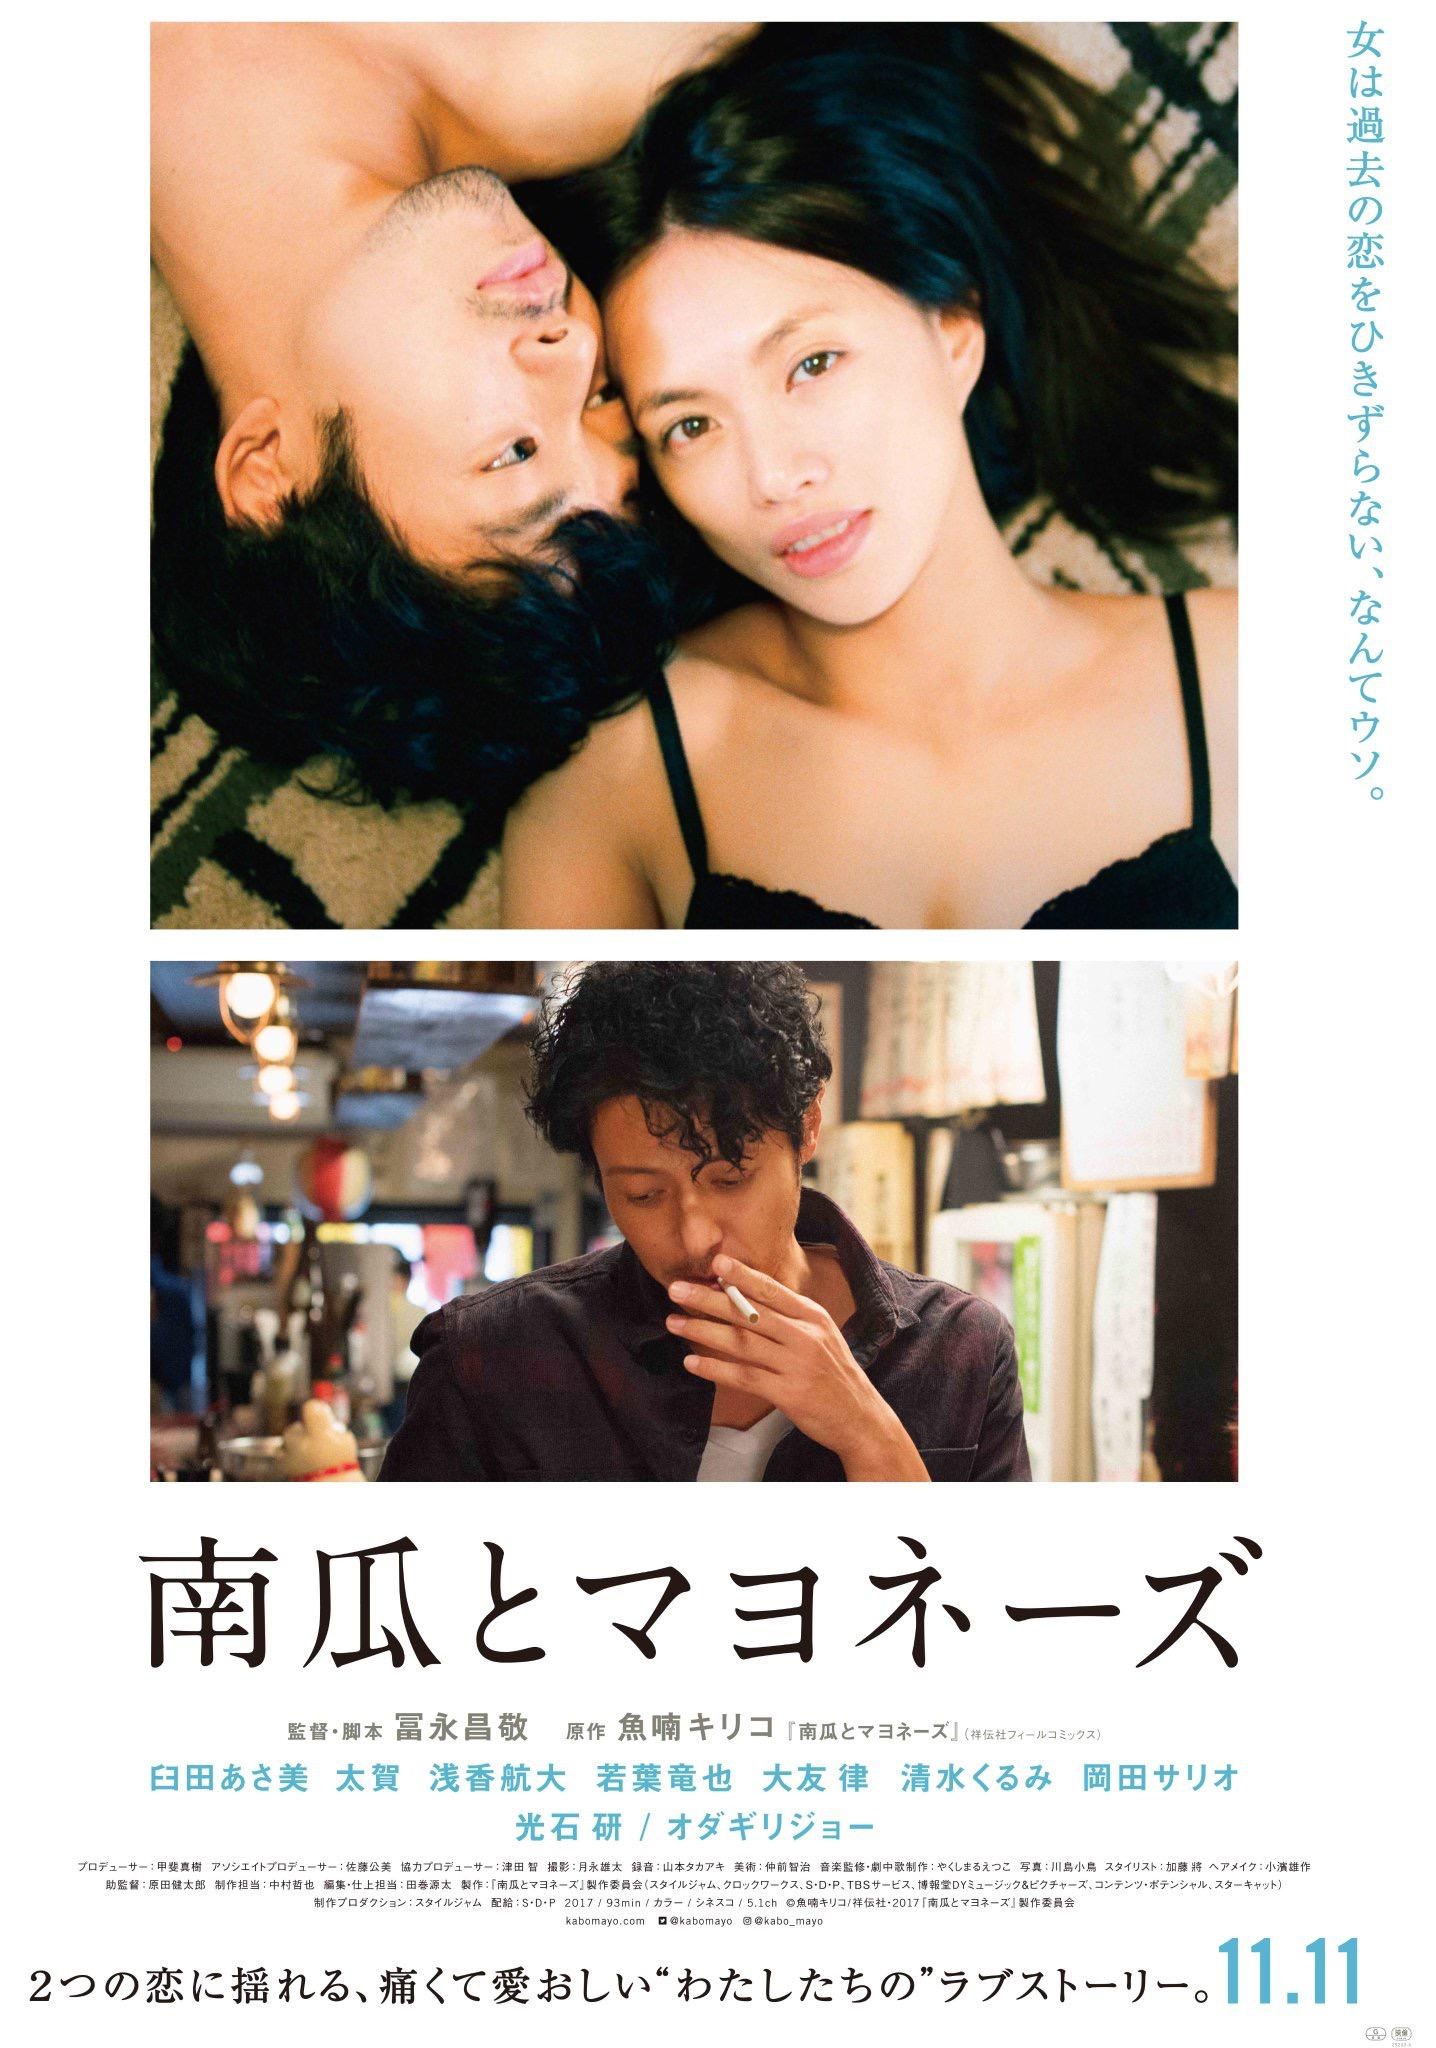 《南瓜与蛋黄酱》公开预告海报 双十一日本上映